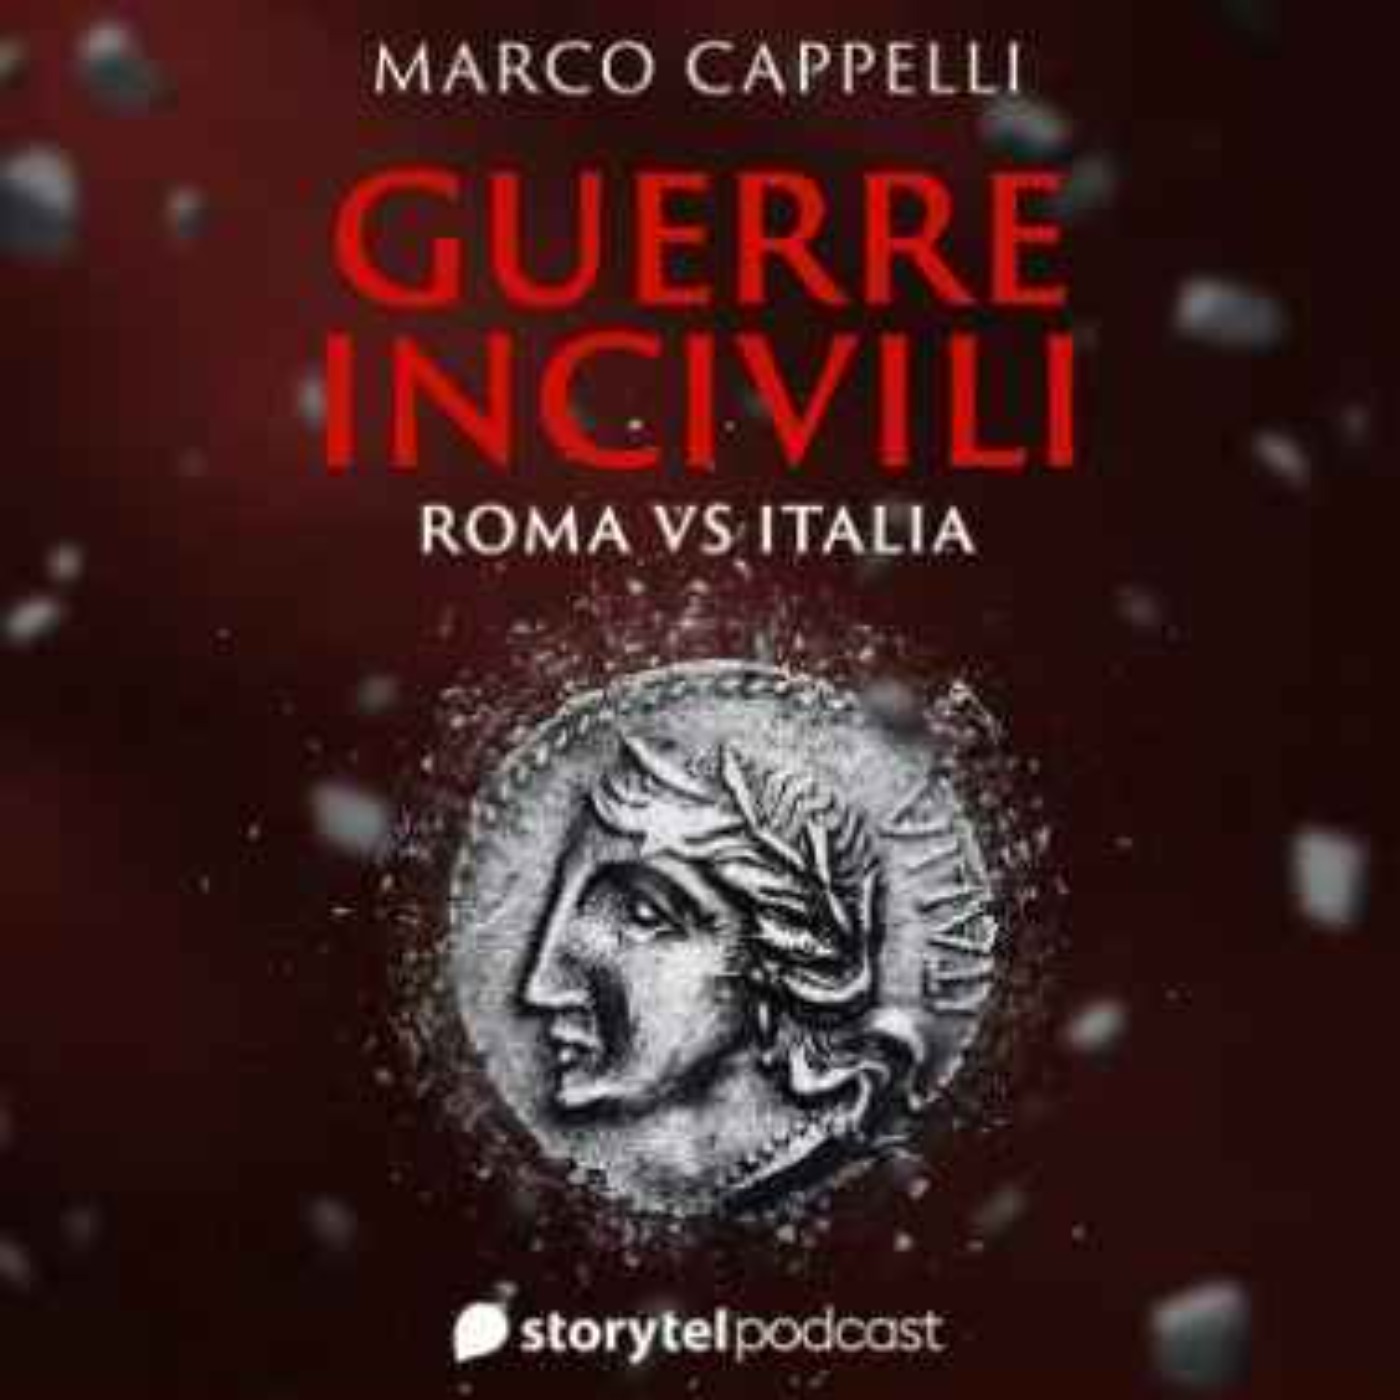 Guerre incivili - Roma vs Italia: ep. 1, la questione italiana